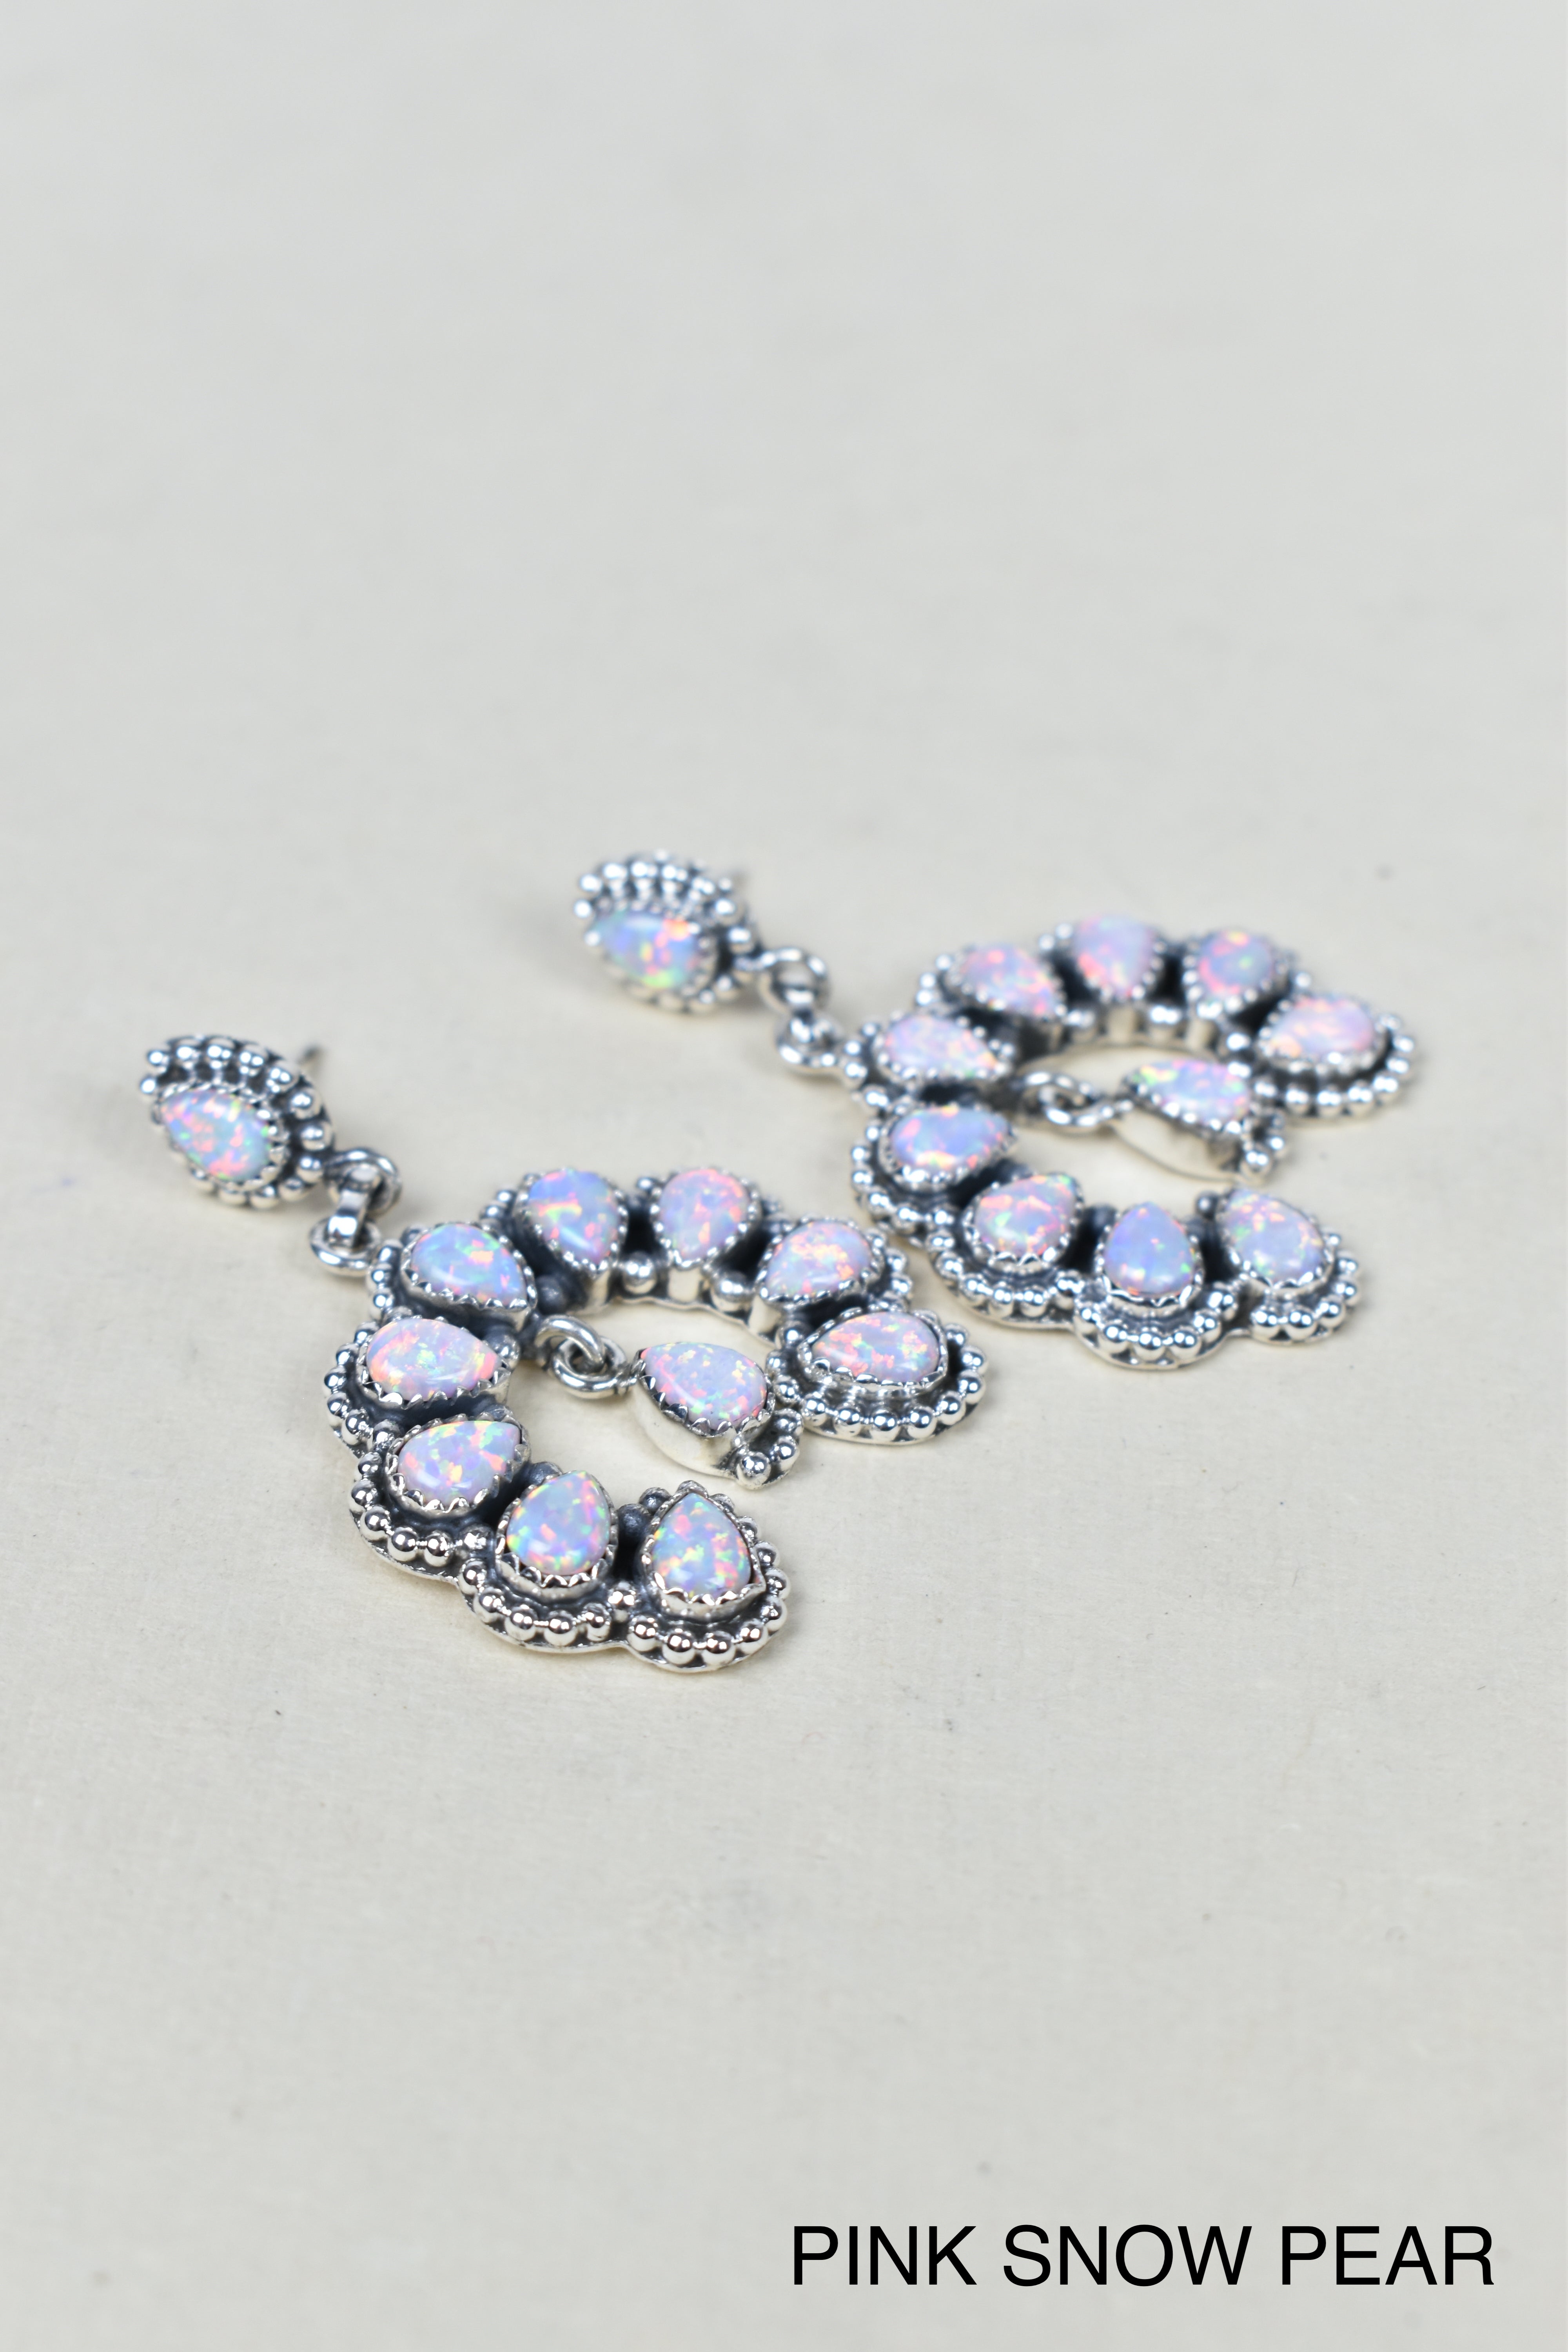 Double Luck Sterling Silver Earrings-Earrings-Krush Kandy, Women's Online Fashion Boutique Located in Phoenix, Arizona (Scottsdale Area)